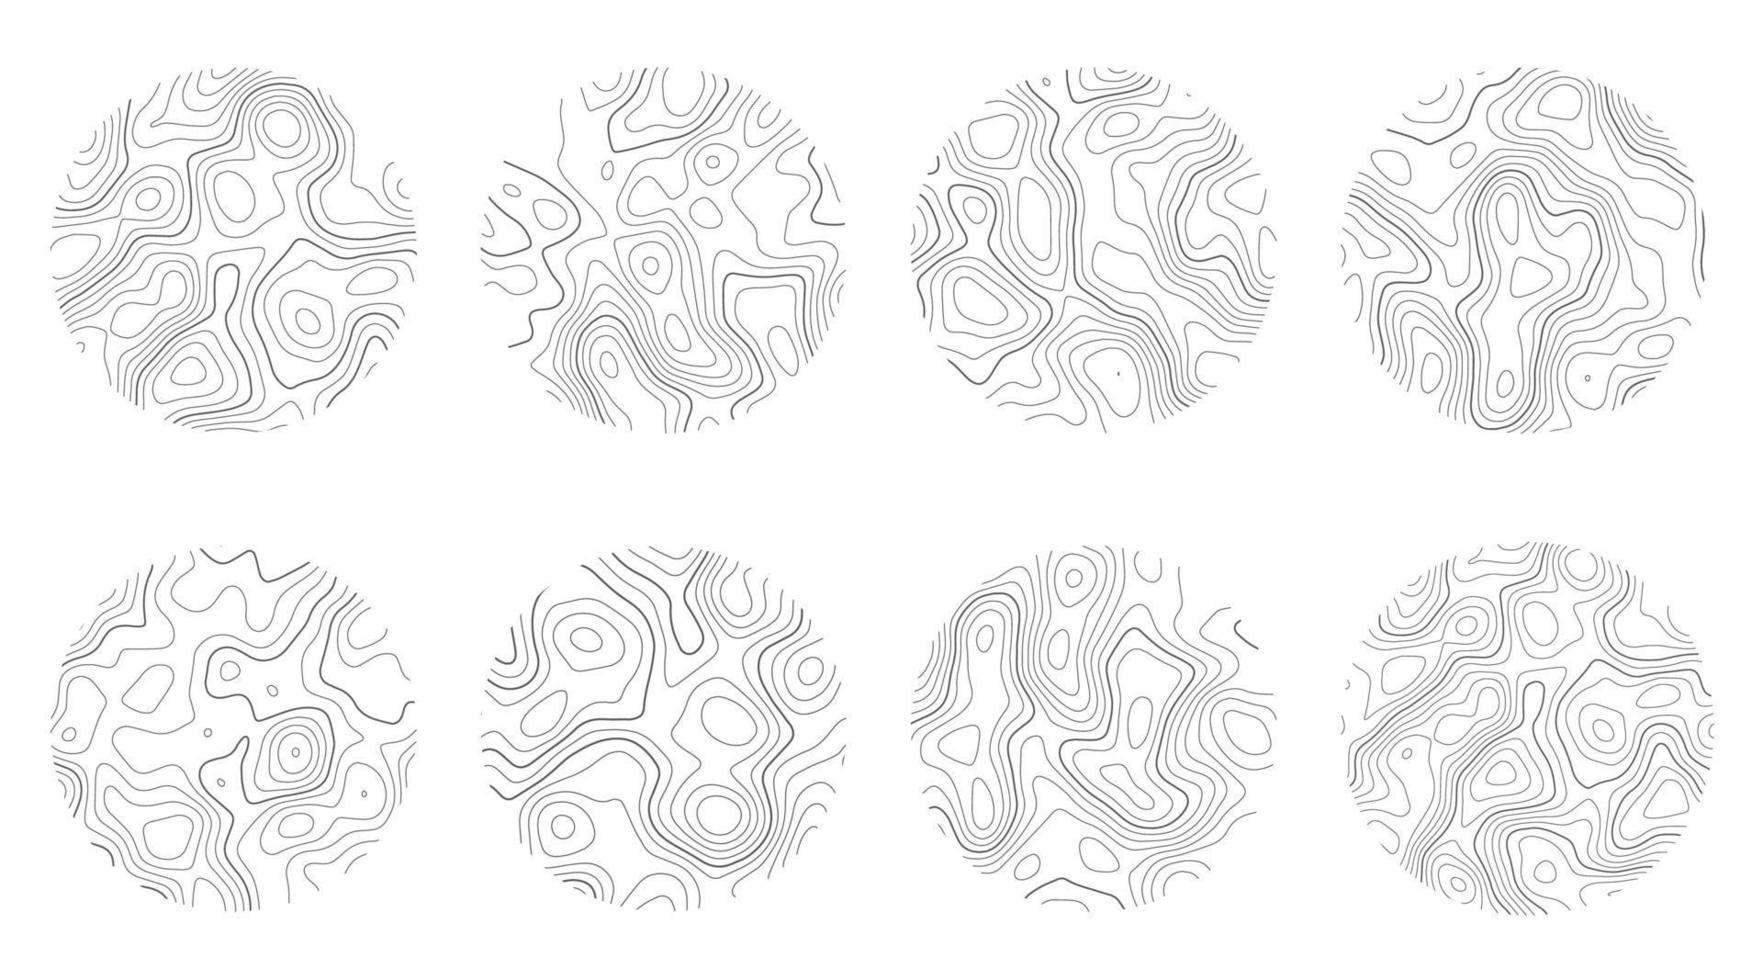 textura de madeira com linhas de topografia. padrões ondulados de ondulação orgânica. conjunto de anéis de árvore. ilustração vetorial doodle. vetor